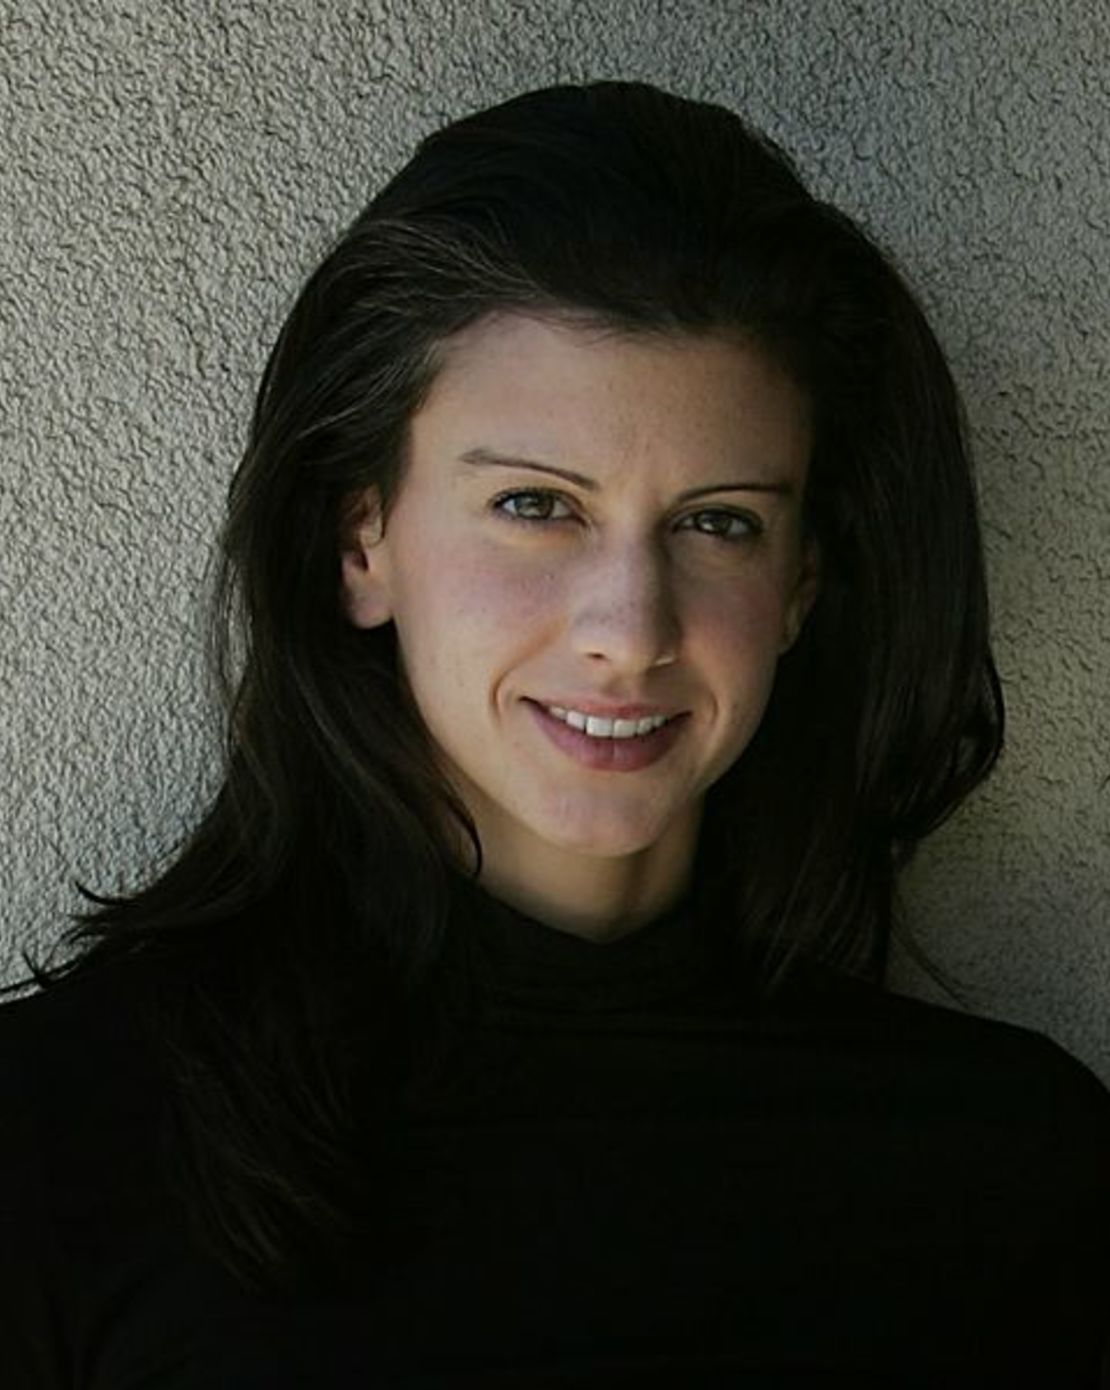 Sarah Holewinski